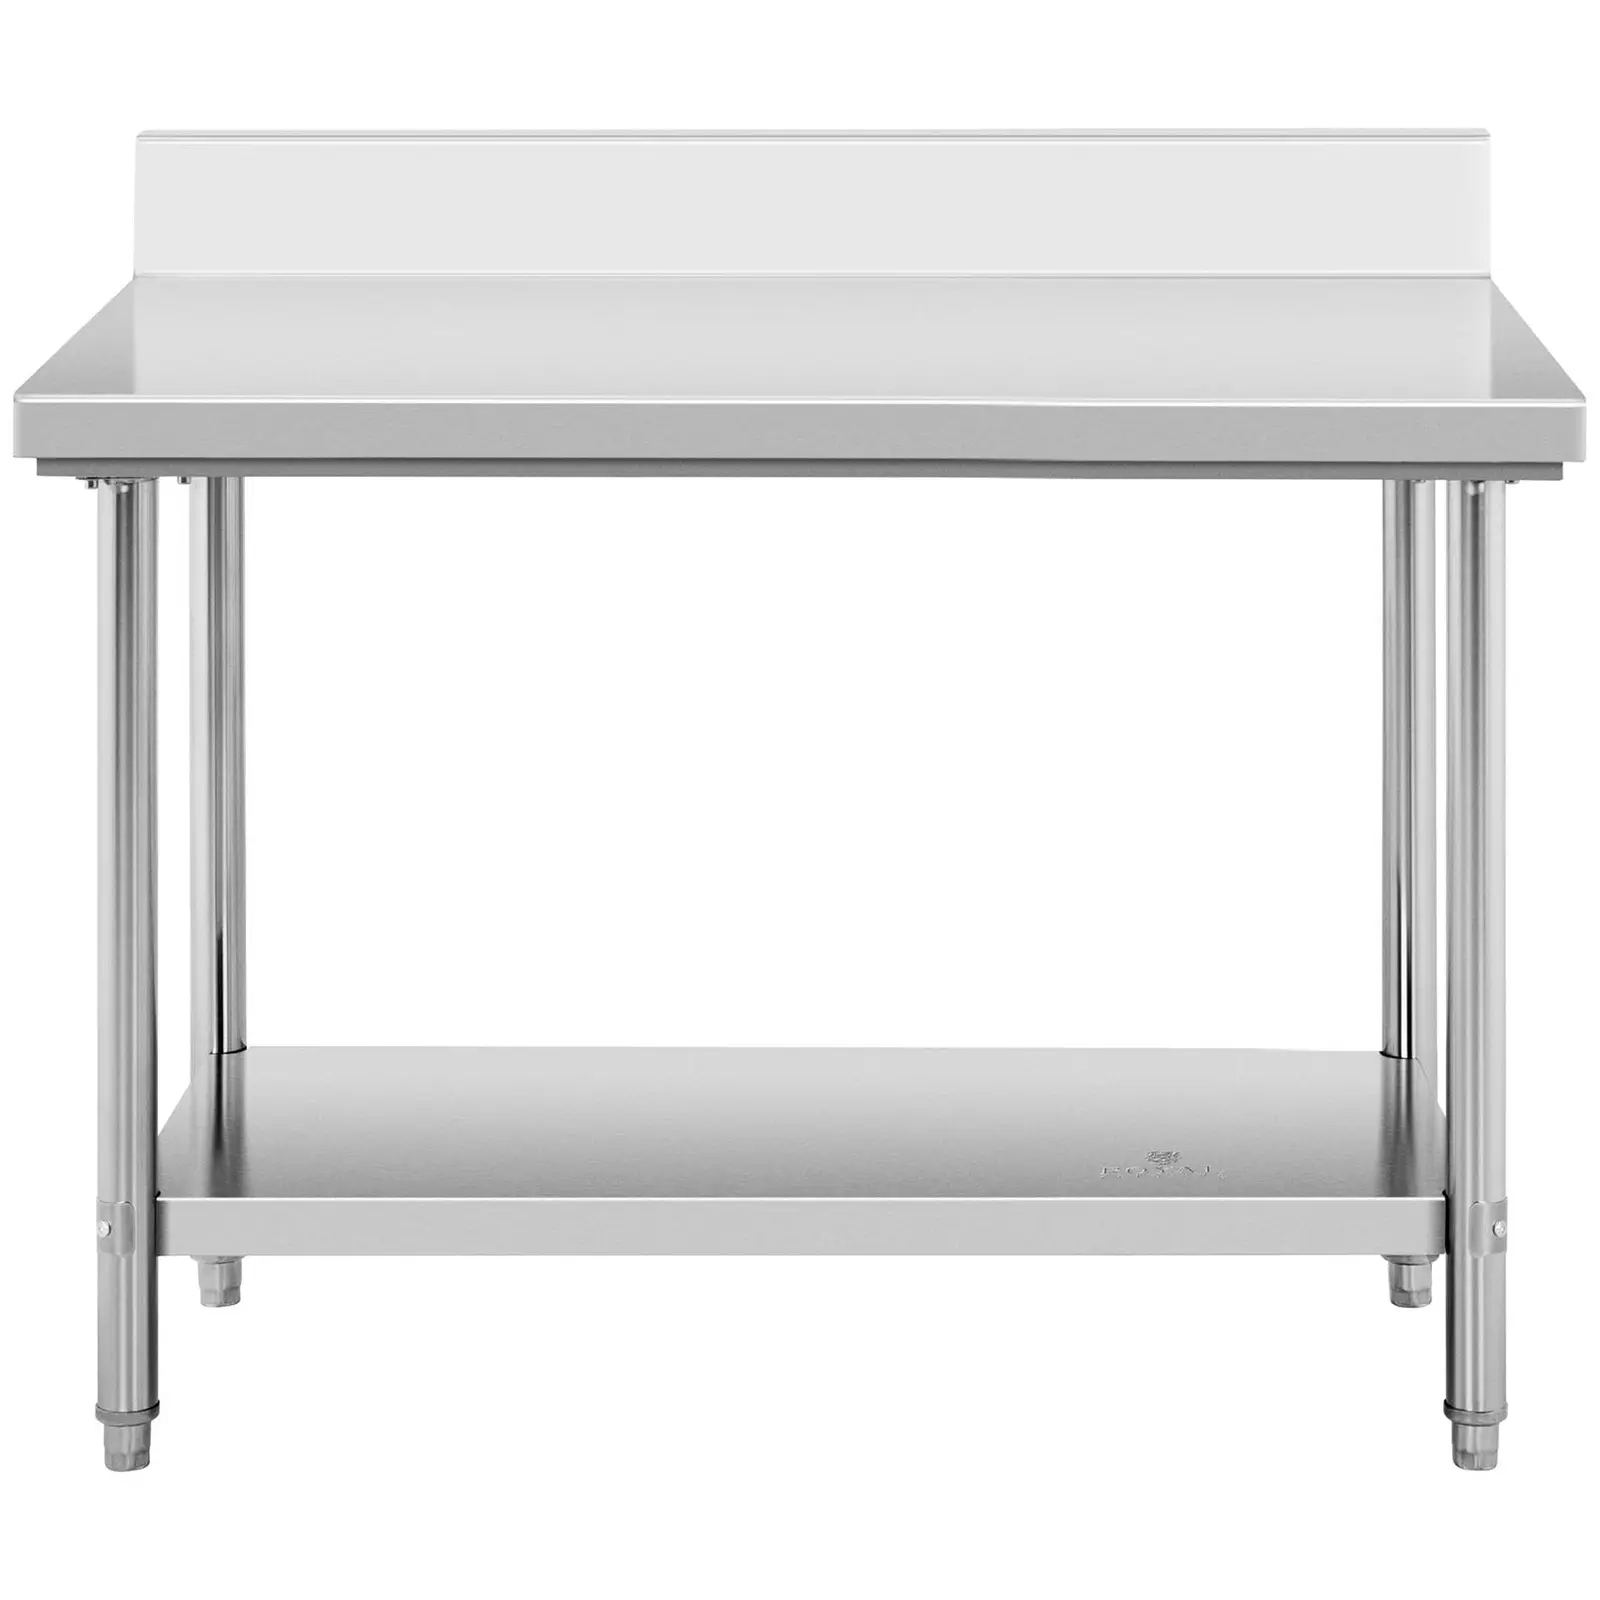 Pracovní stůl z ušlechtilé oceli - 120 x 60 cm - lem - nosnost 198 kg - Royal Catering